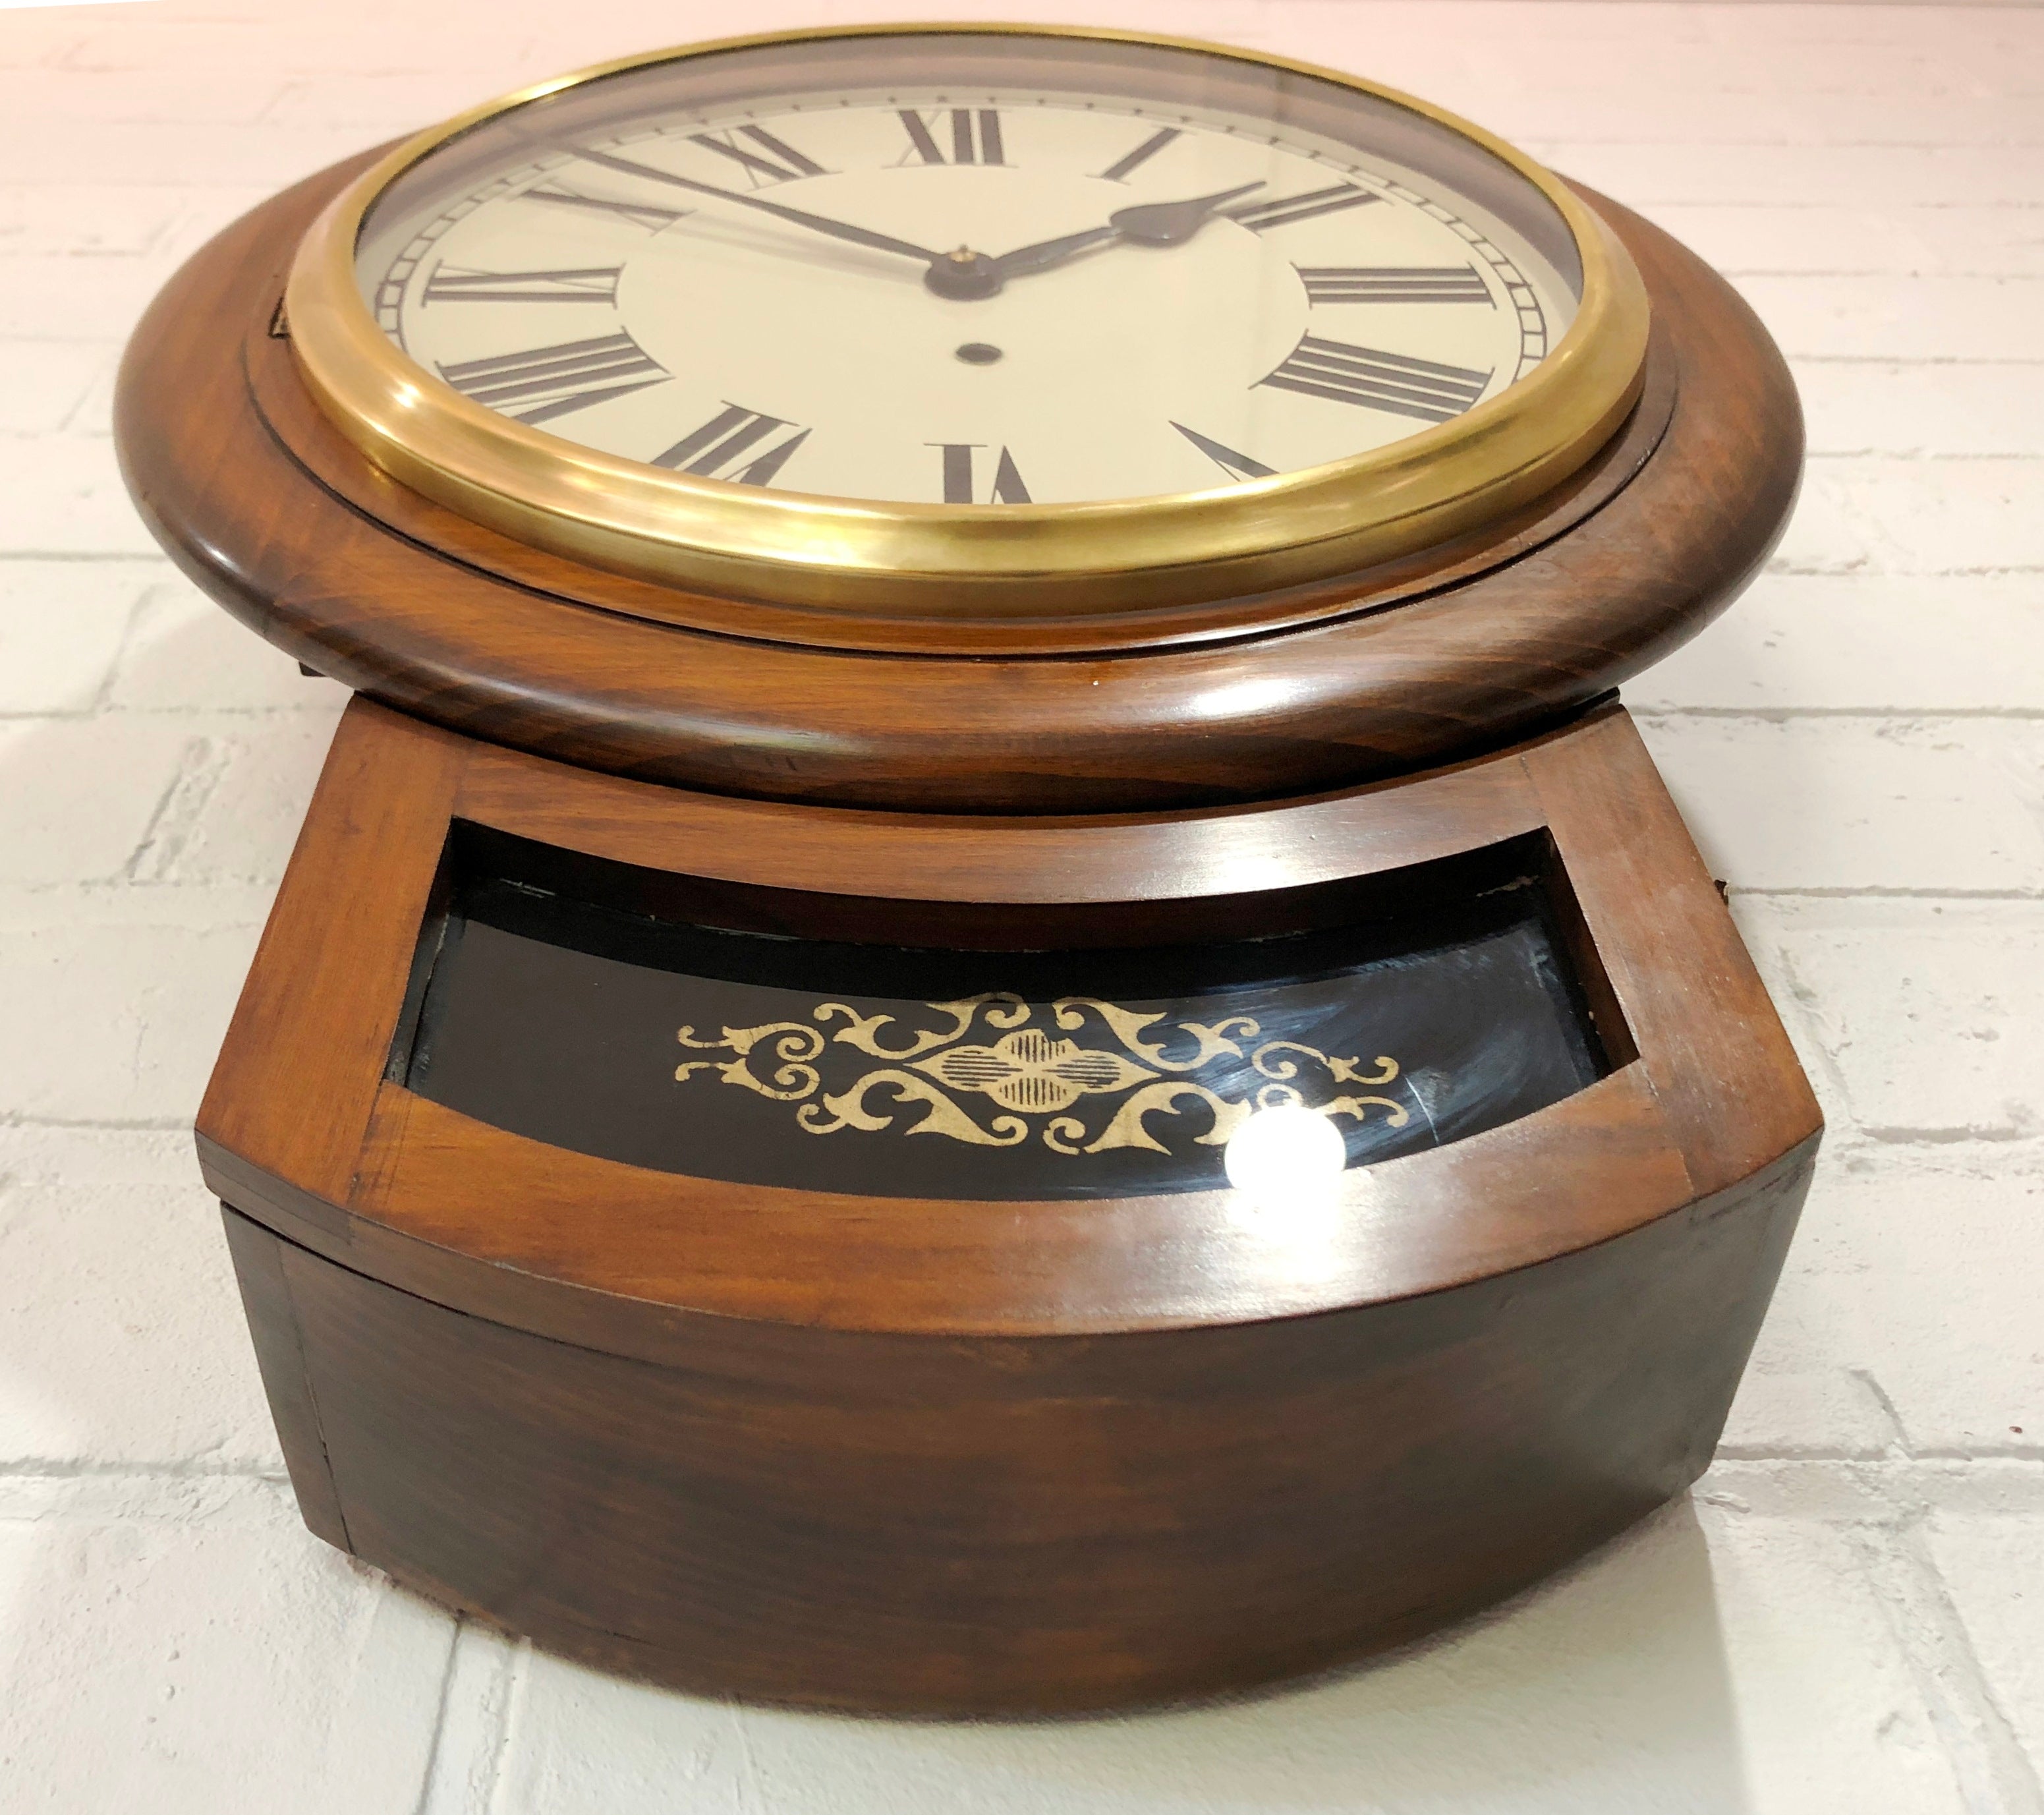 Original Antique NAYAKS-TTC Drop Dial Wall Clock | eXibit collection